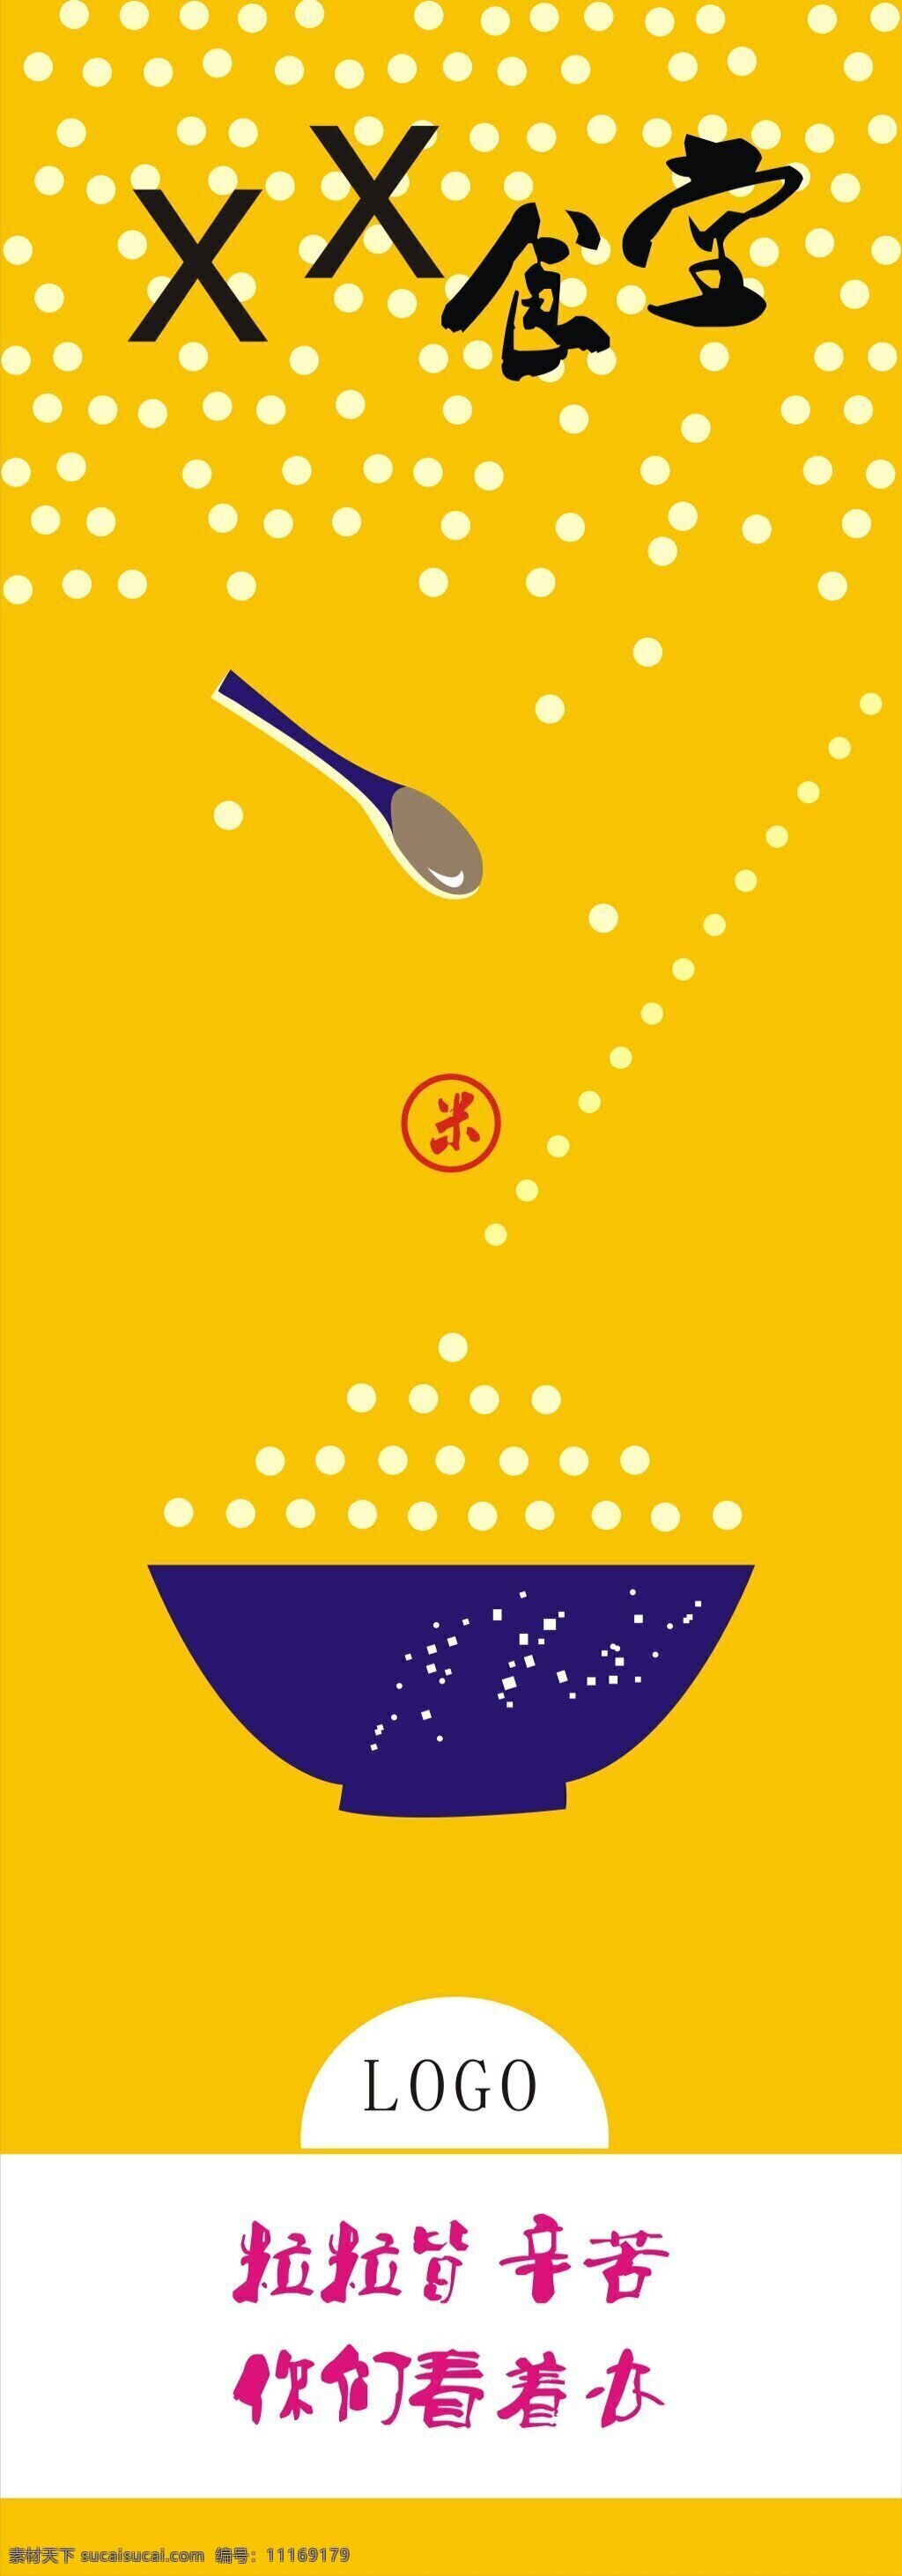 食堂海报宣传 大米 勺子 粒粒皆辛苦 食堂展板画面 食堂宣传 黄色